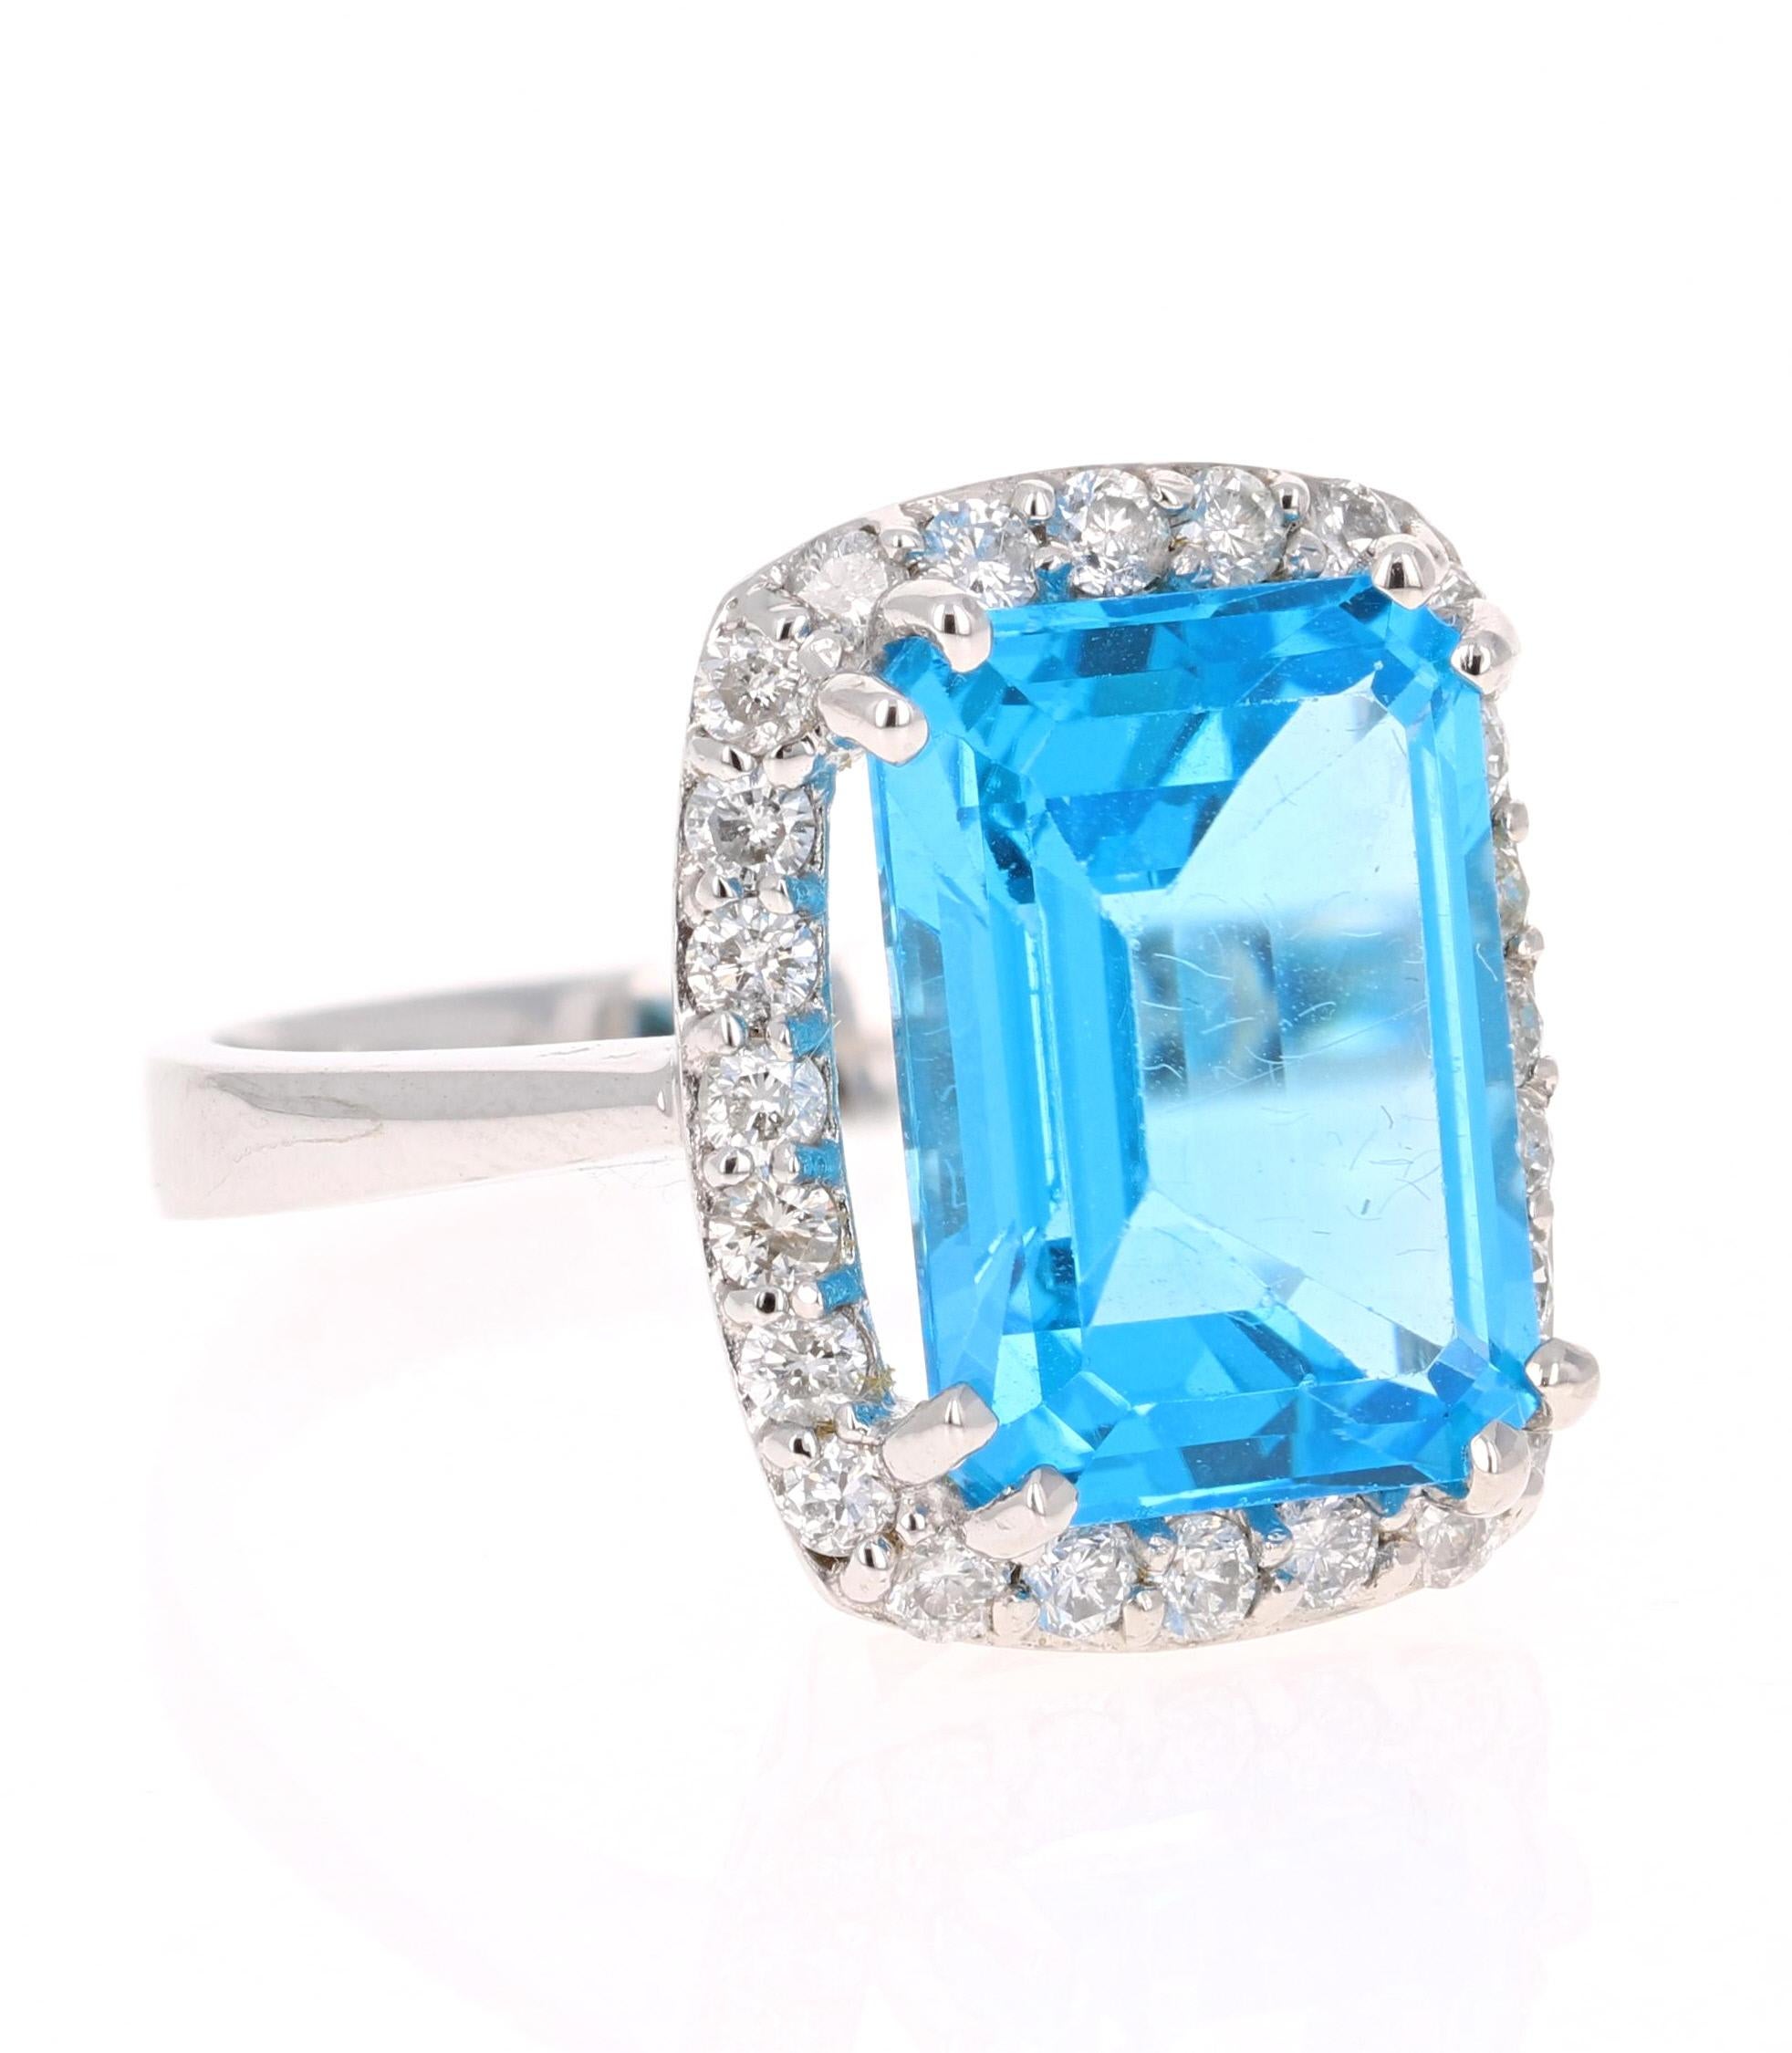 Dieser wunderschöne Ring aus Blautopas und Diamant im Smaragdschliff hat einen atemberaubend großen Blautopas mit einem Gewicht von 9,14 Karat. Er ist umgeben von 24 Diamanten im Rundschliff mit einem Gewicht von 0,74 Karat. Das Gesamtkaratgewicht